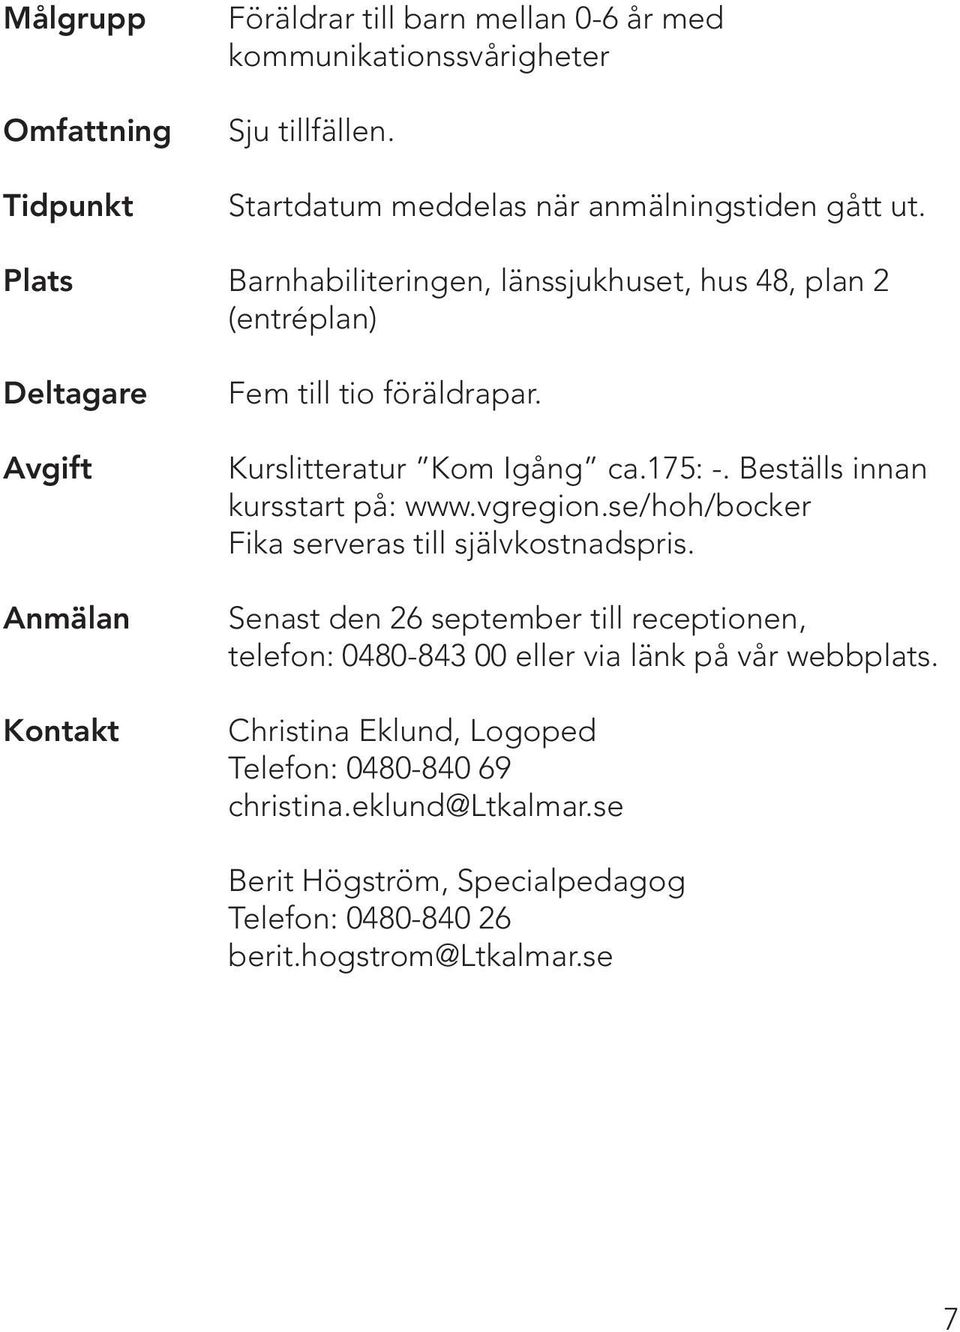 Beställs innan kursstart på: www.vgregion.se/hoh/bocker Fika serveras till självkostnadspris.